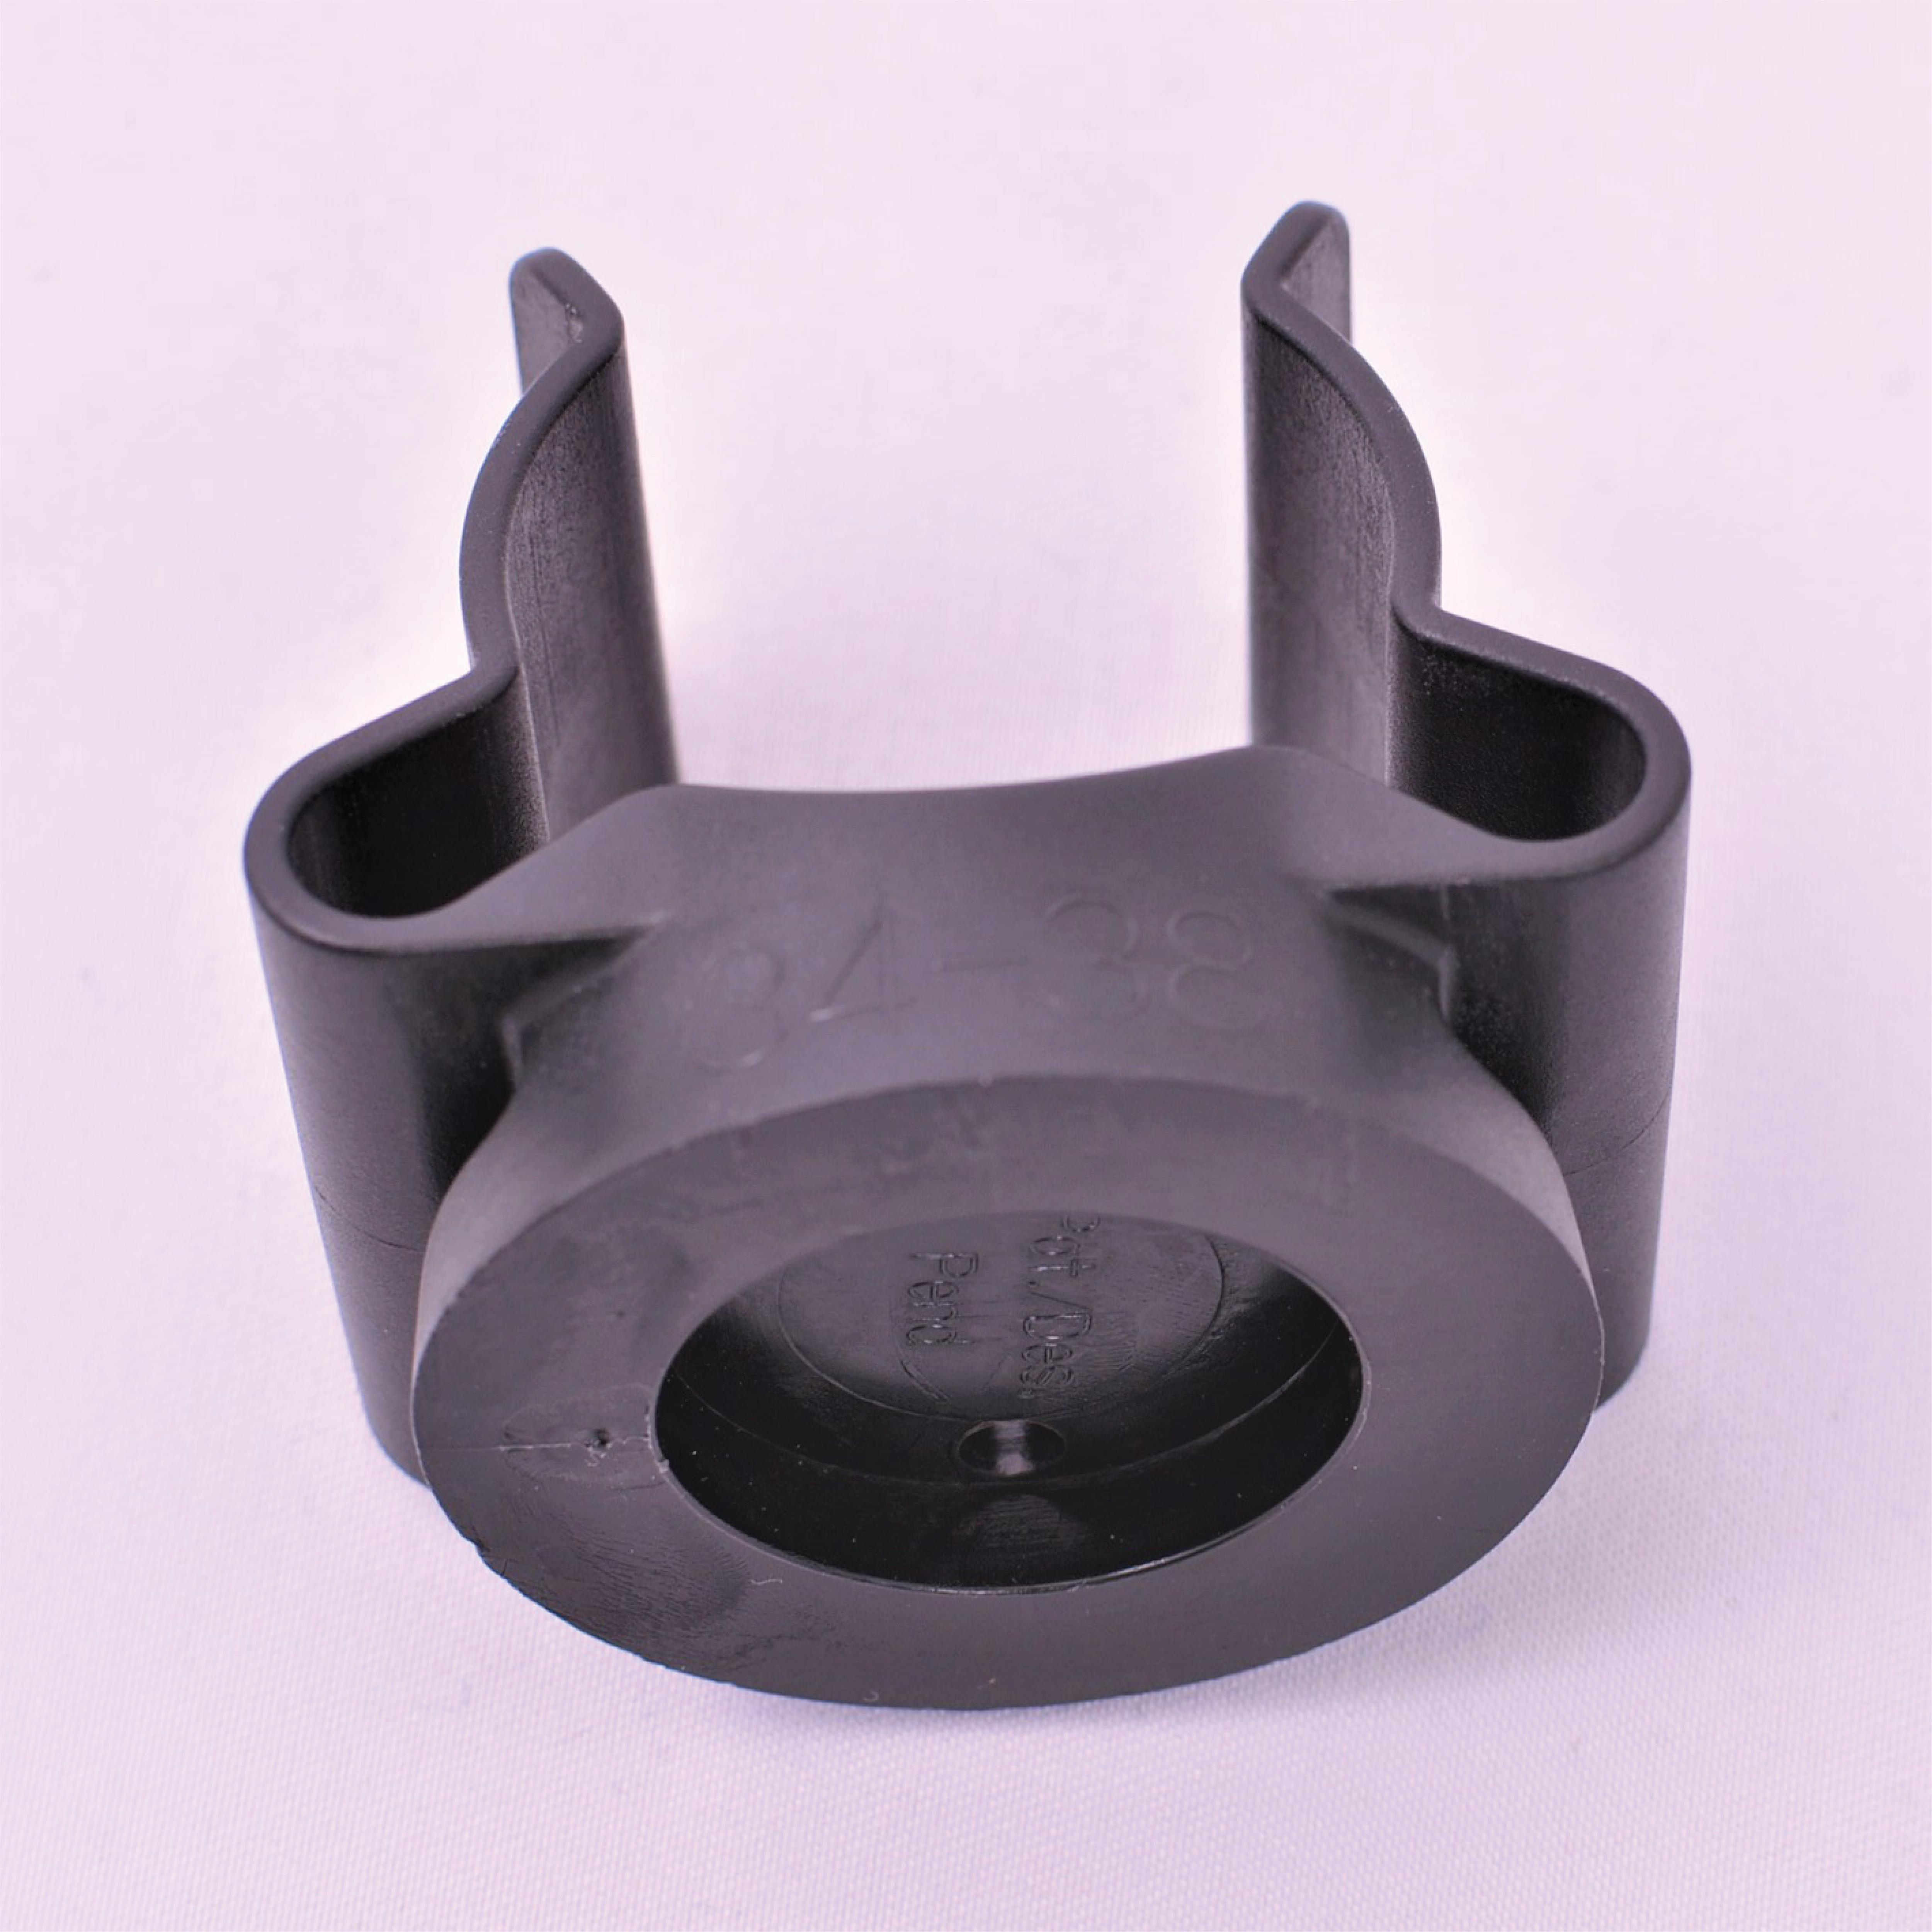 Toolflex Micky-Clip 34-38 mm für Einzelmontage in schwarz